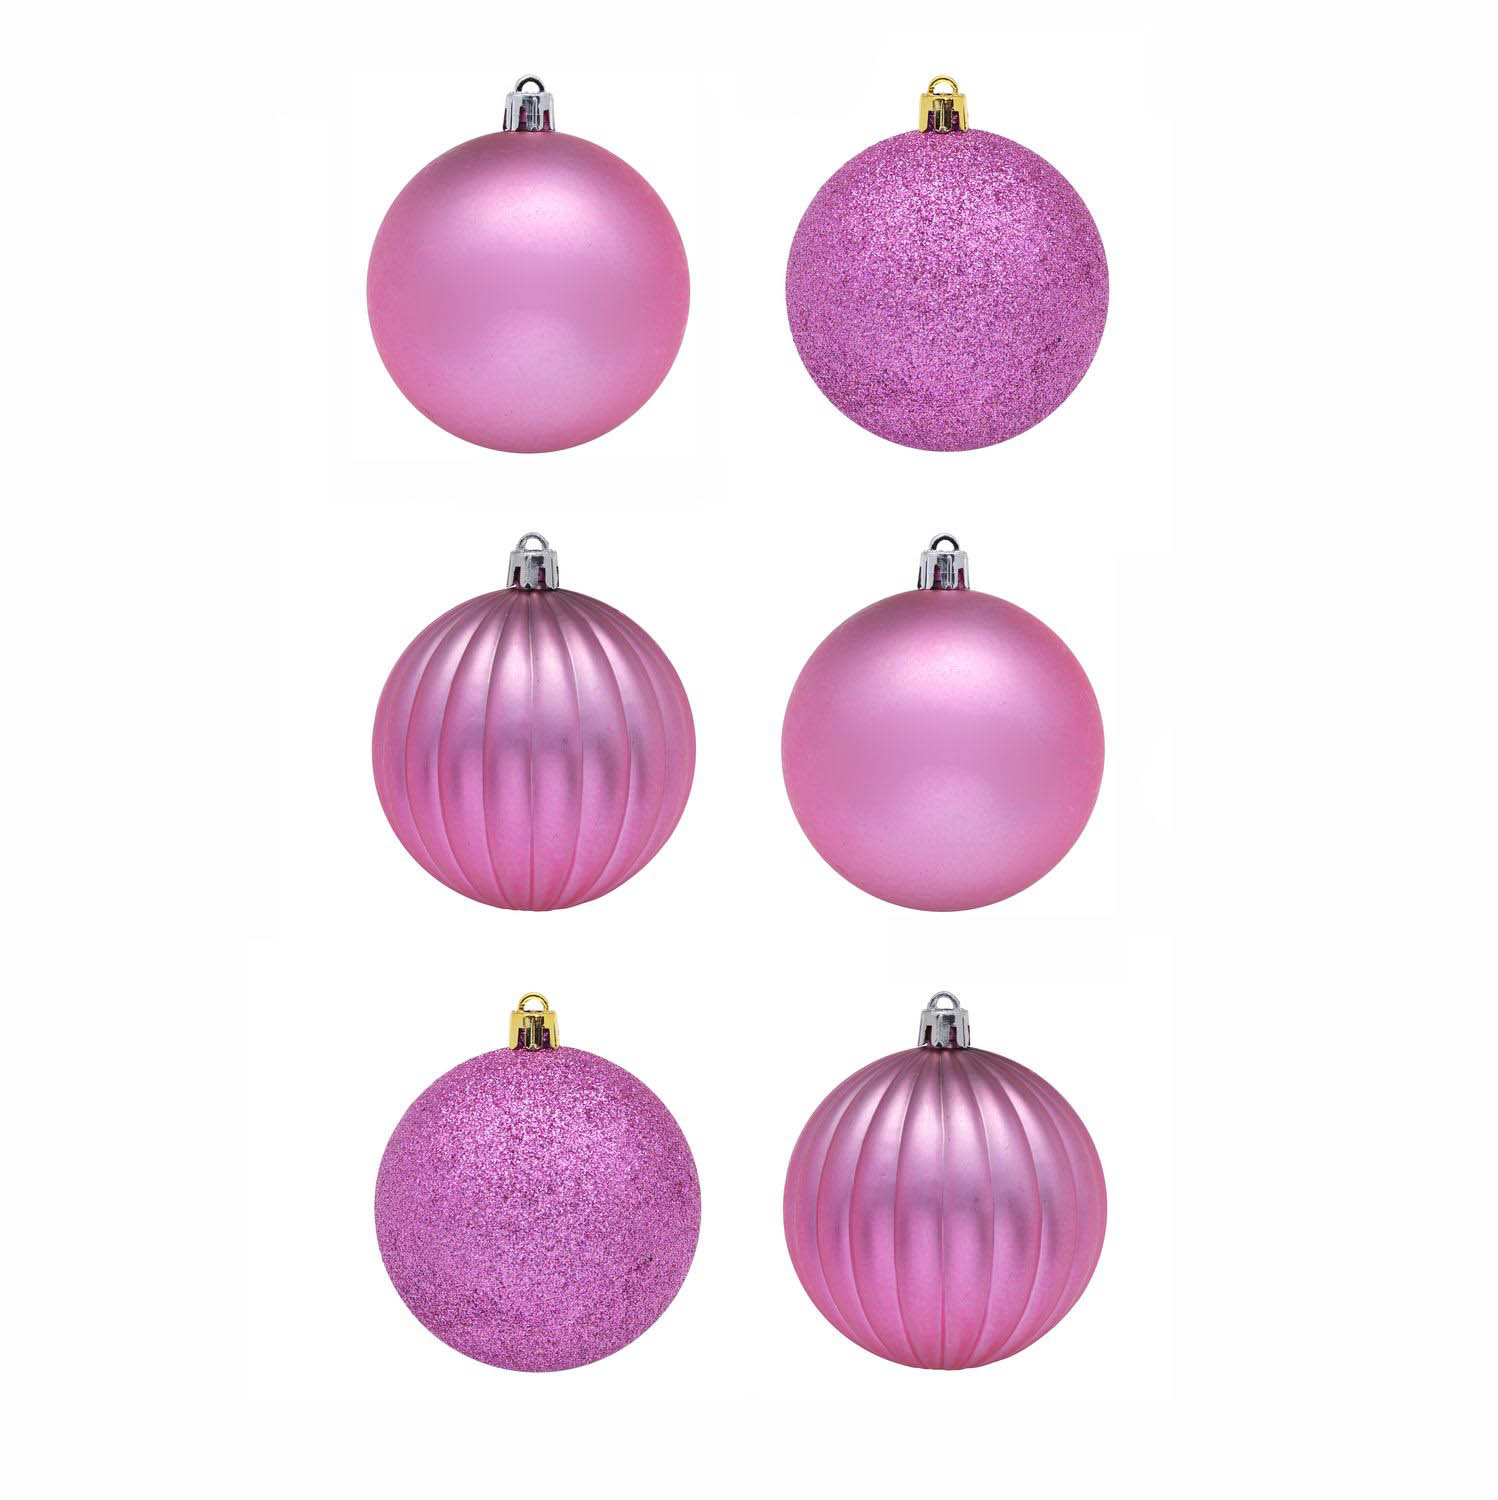 Елочные шарики Trix Цвет: Розовый (8 см - 6 шт), размер 8 см - 6 шт snw225073 Елочные шарики Trix Цвет: Розовый (8 см - 6 шт) - фото 1